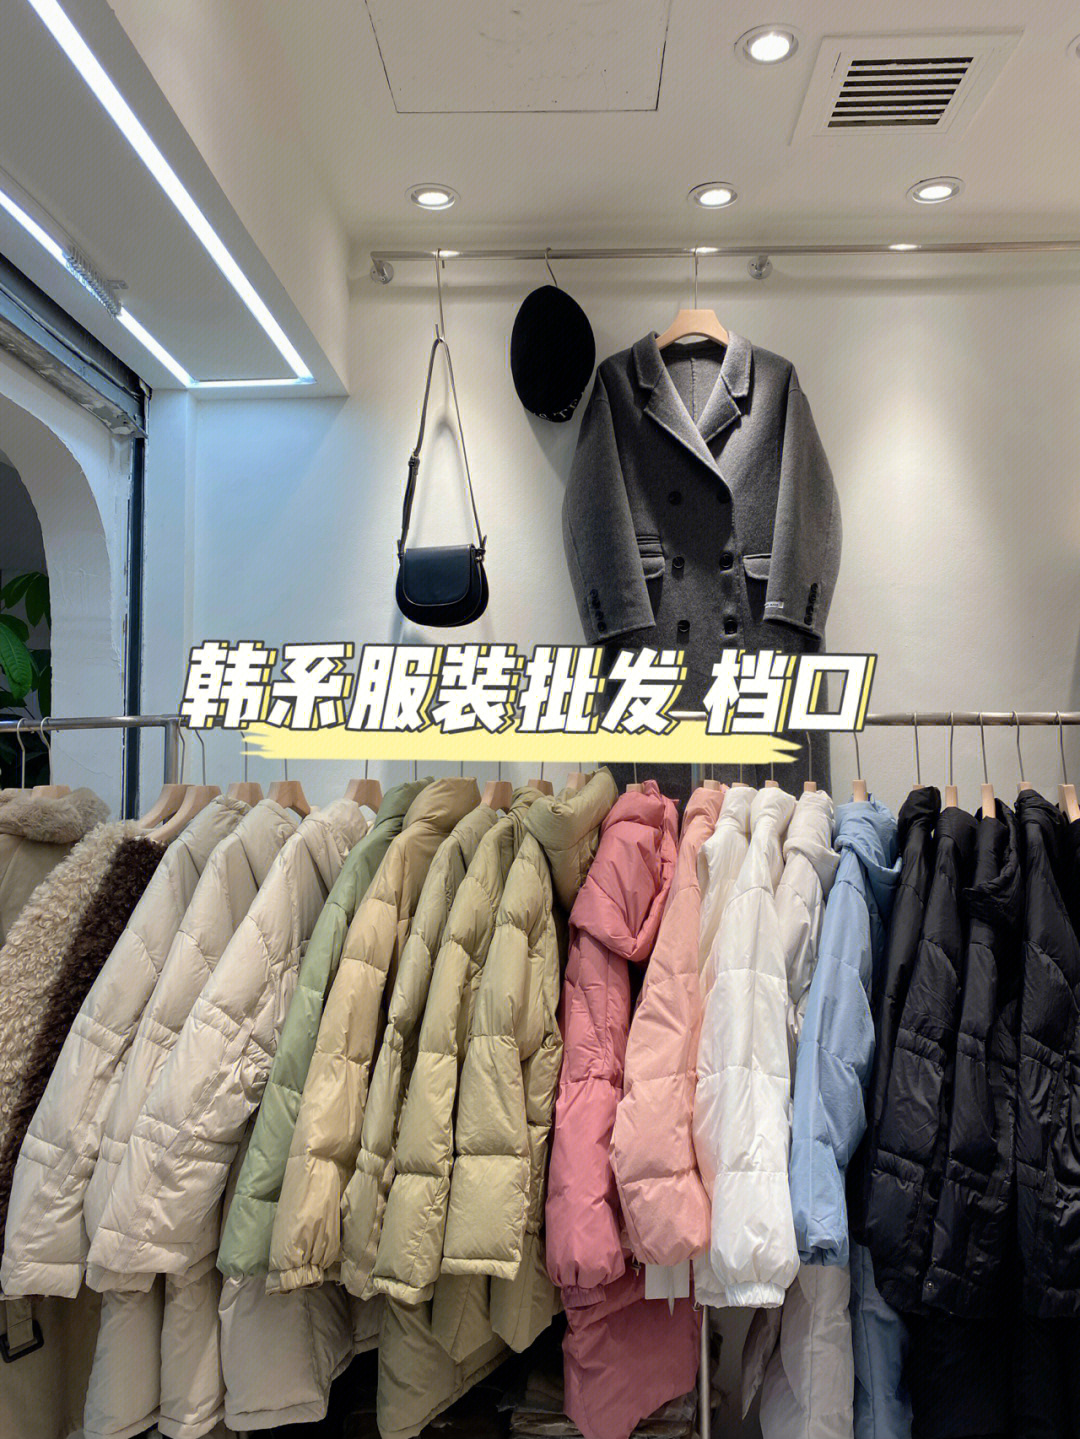 上海七浦路服装批发市场韩系服装批发档口我们只有一个价格,全部都是